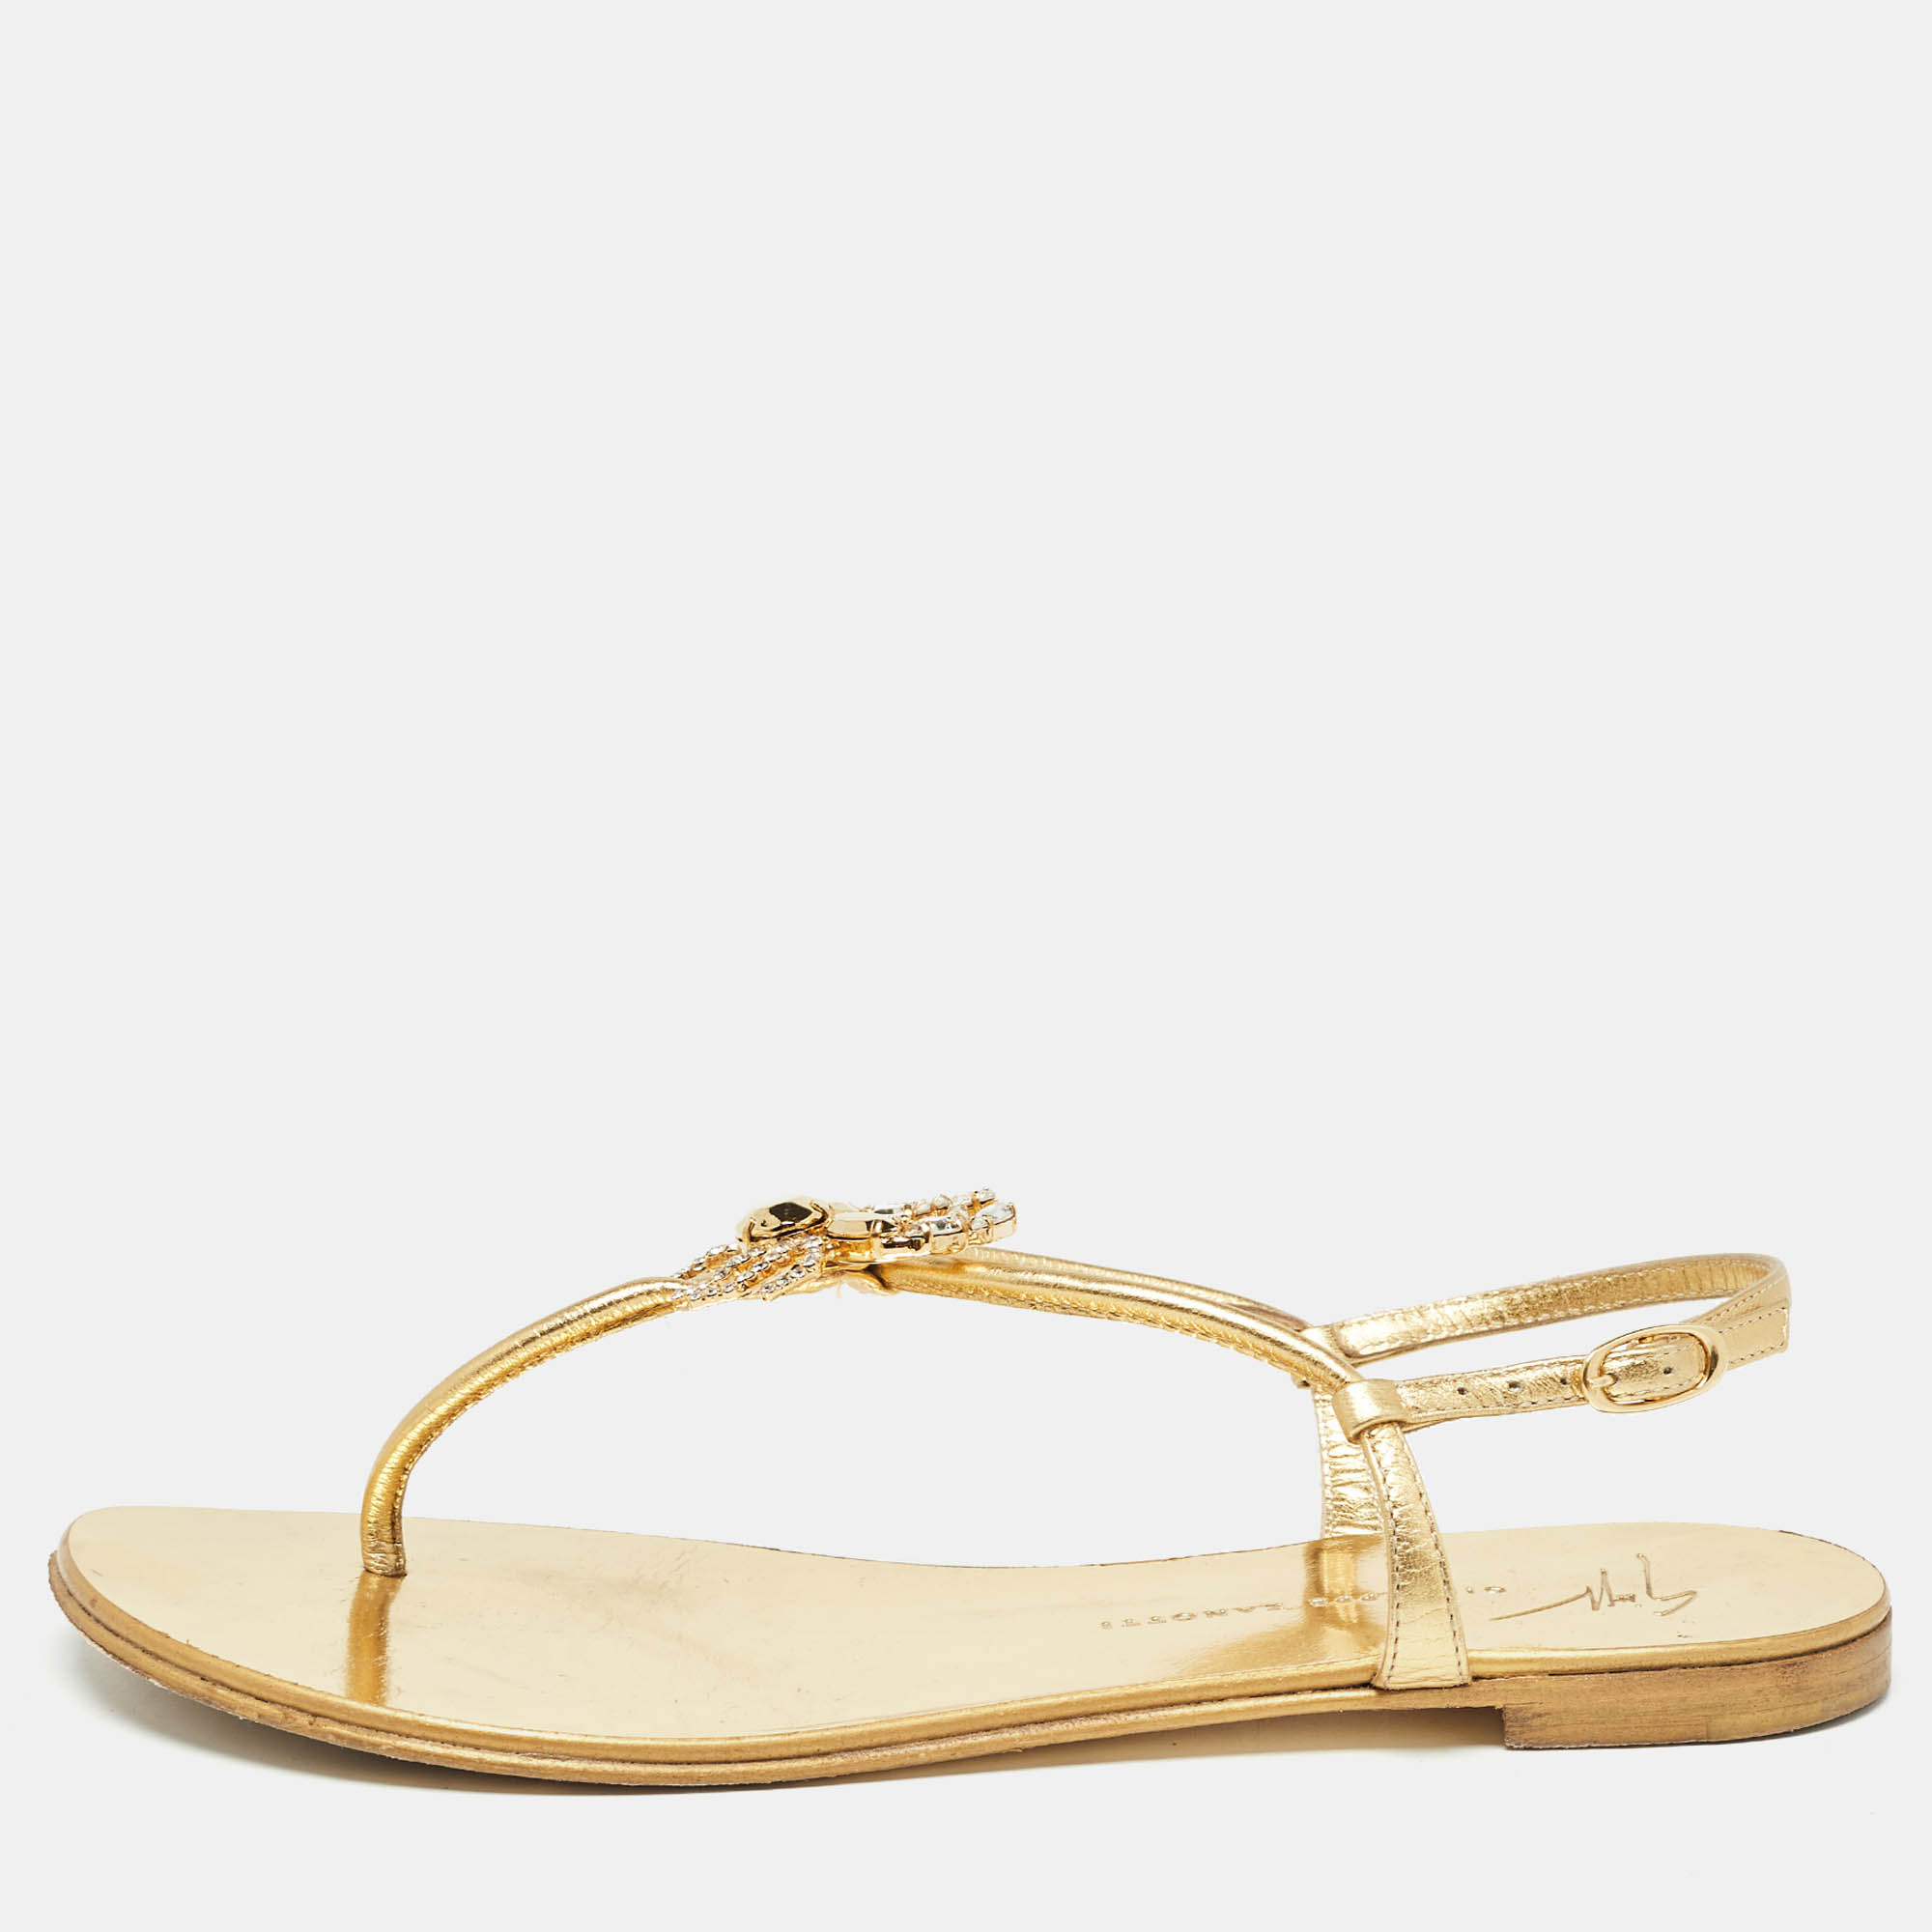 Giuseppe zanotti gold leather crystal embellished scorpio flat sandals size 37